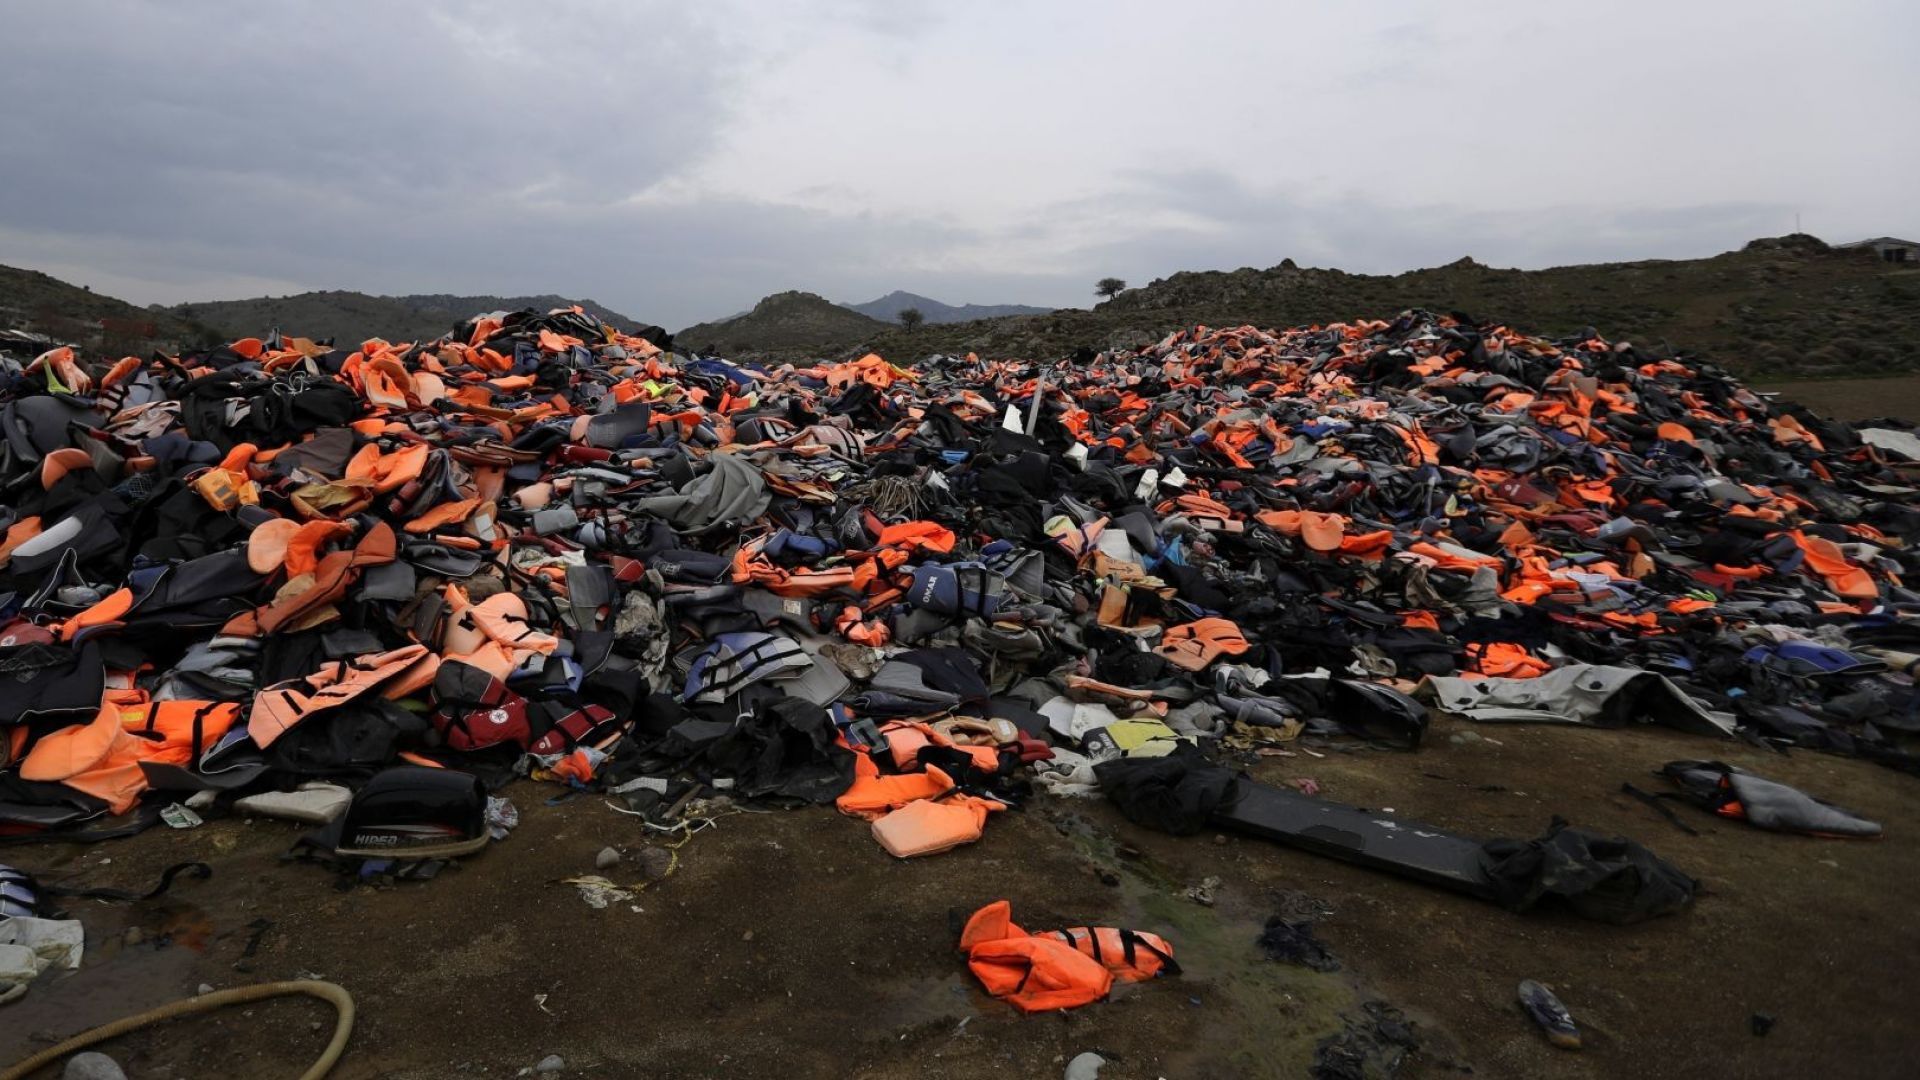 Започна прехвърляне на близо 1500 бежанци от гръцкия остров Лесбос към континента